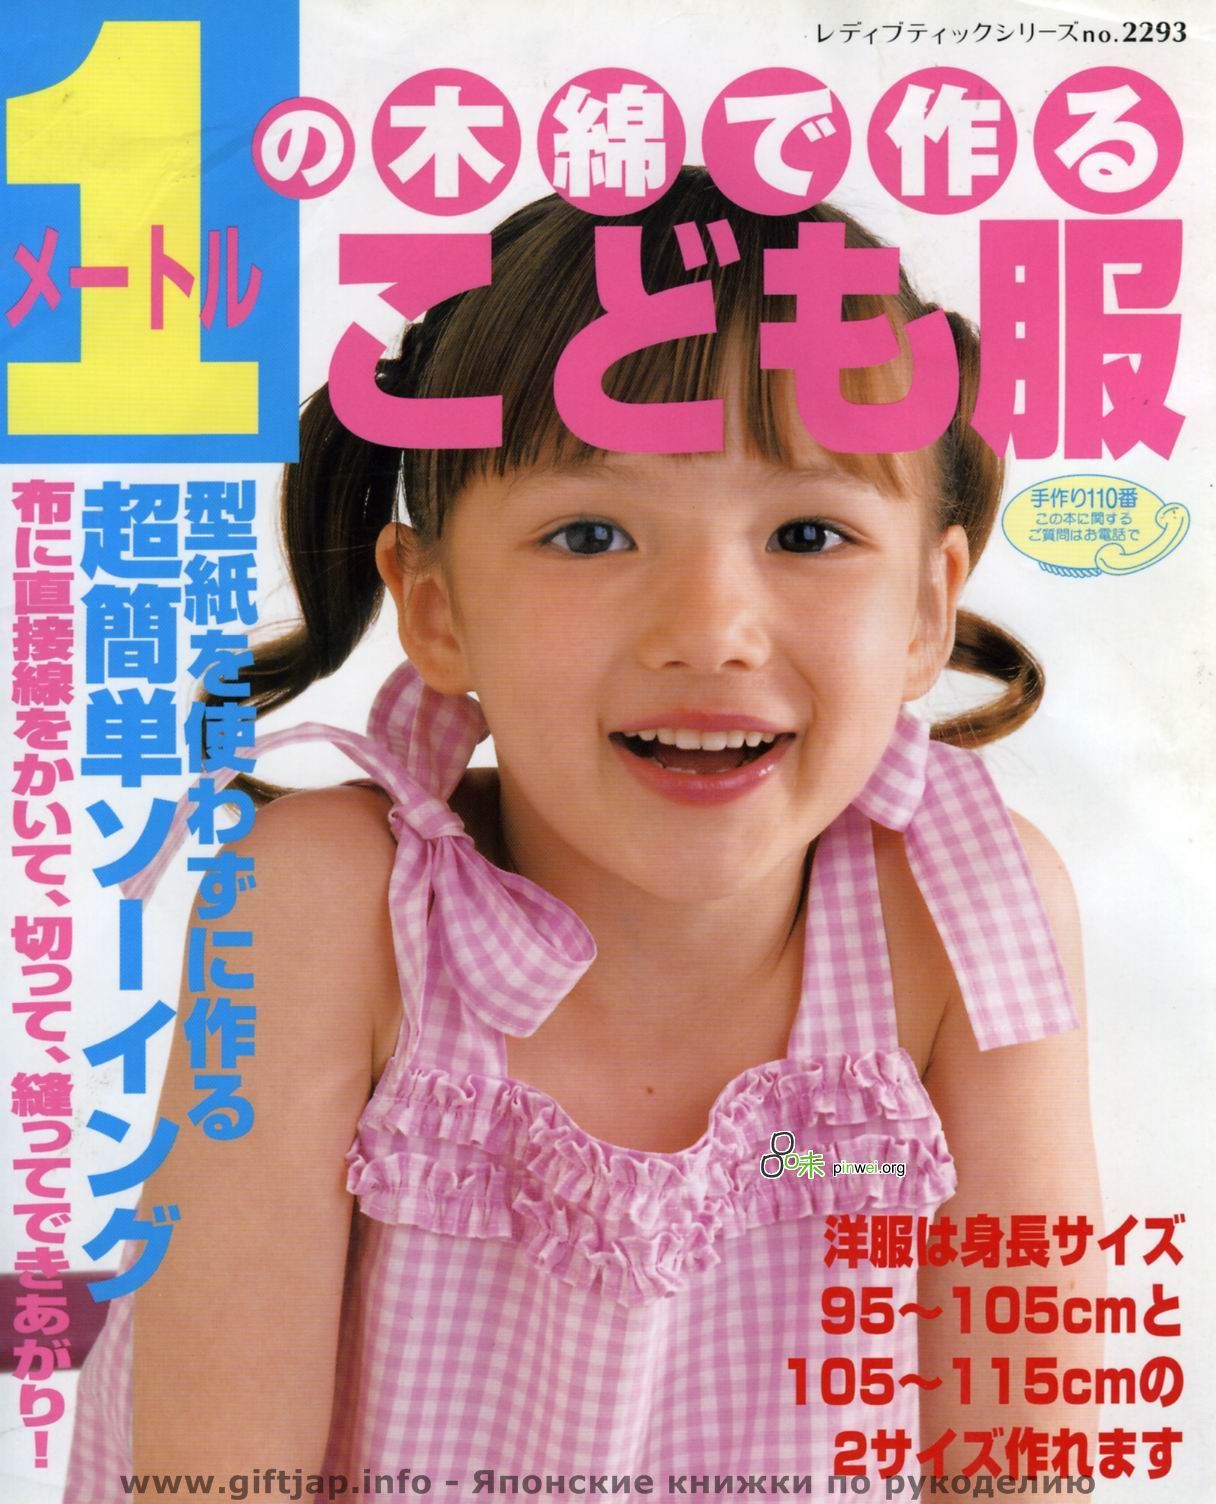 эротика японских детей фото 55